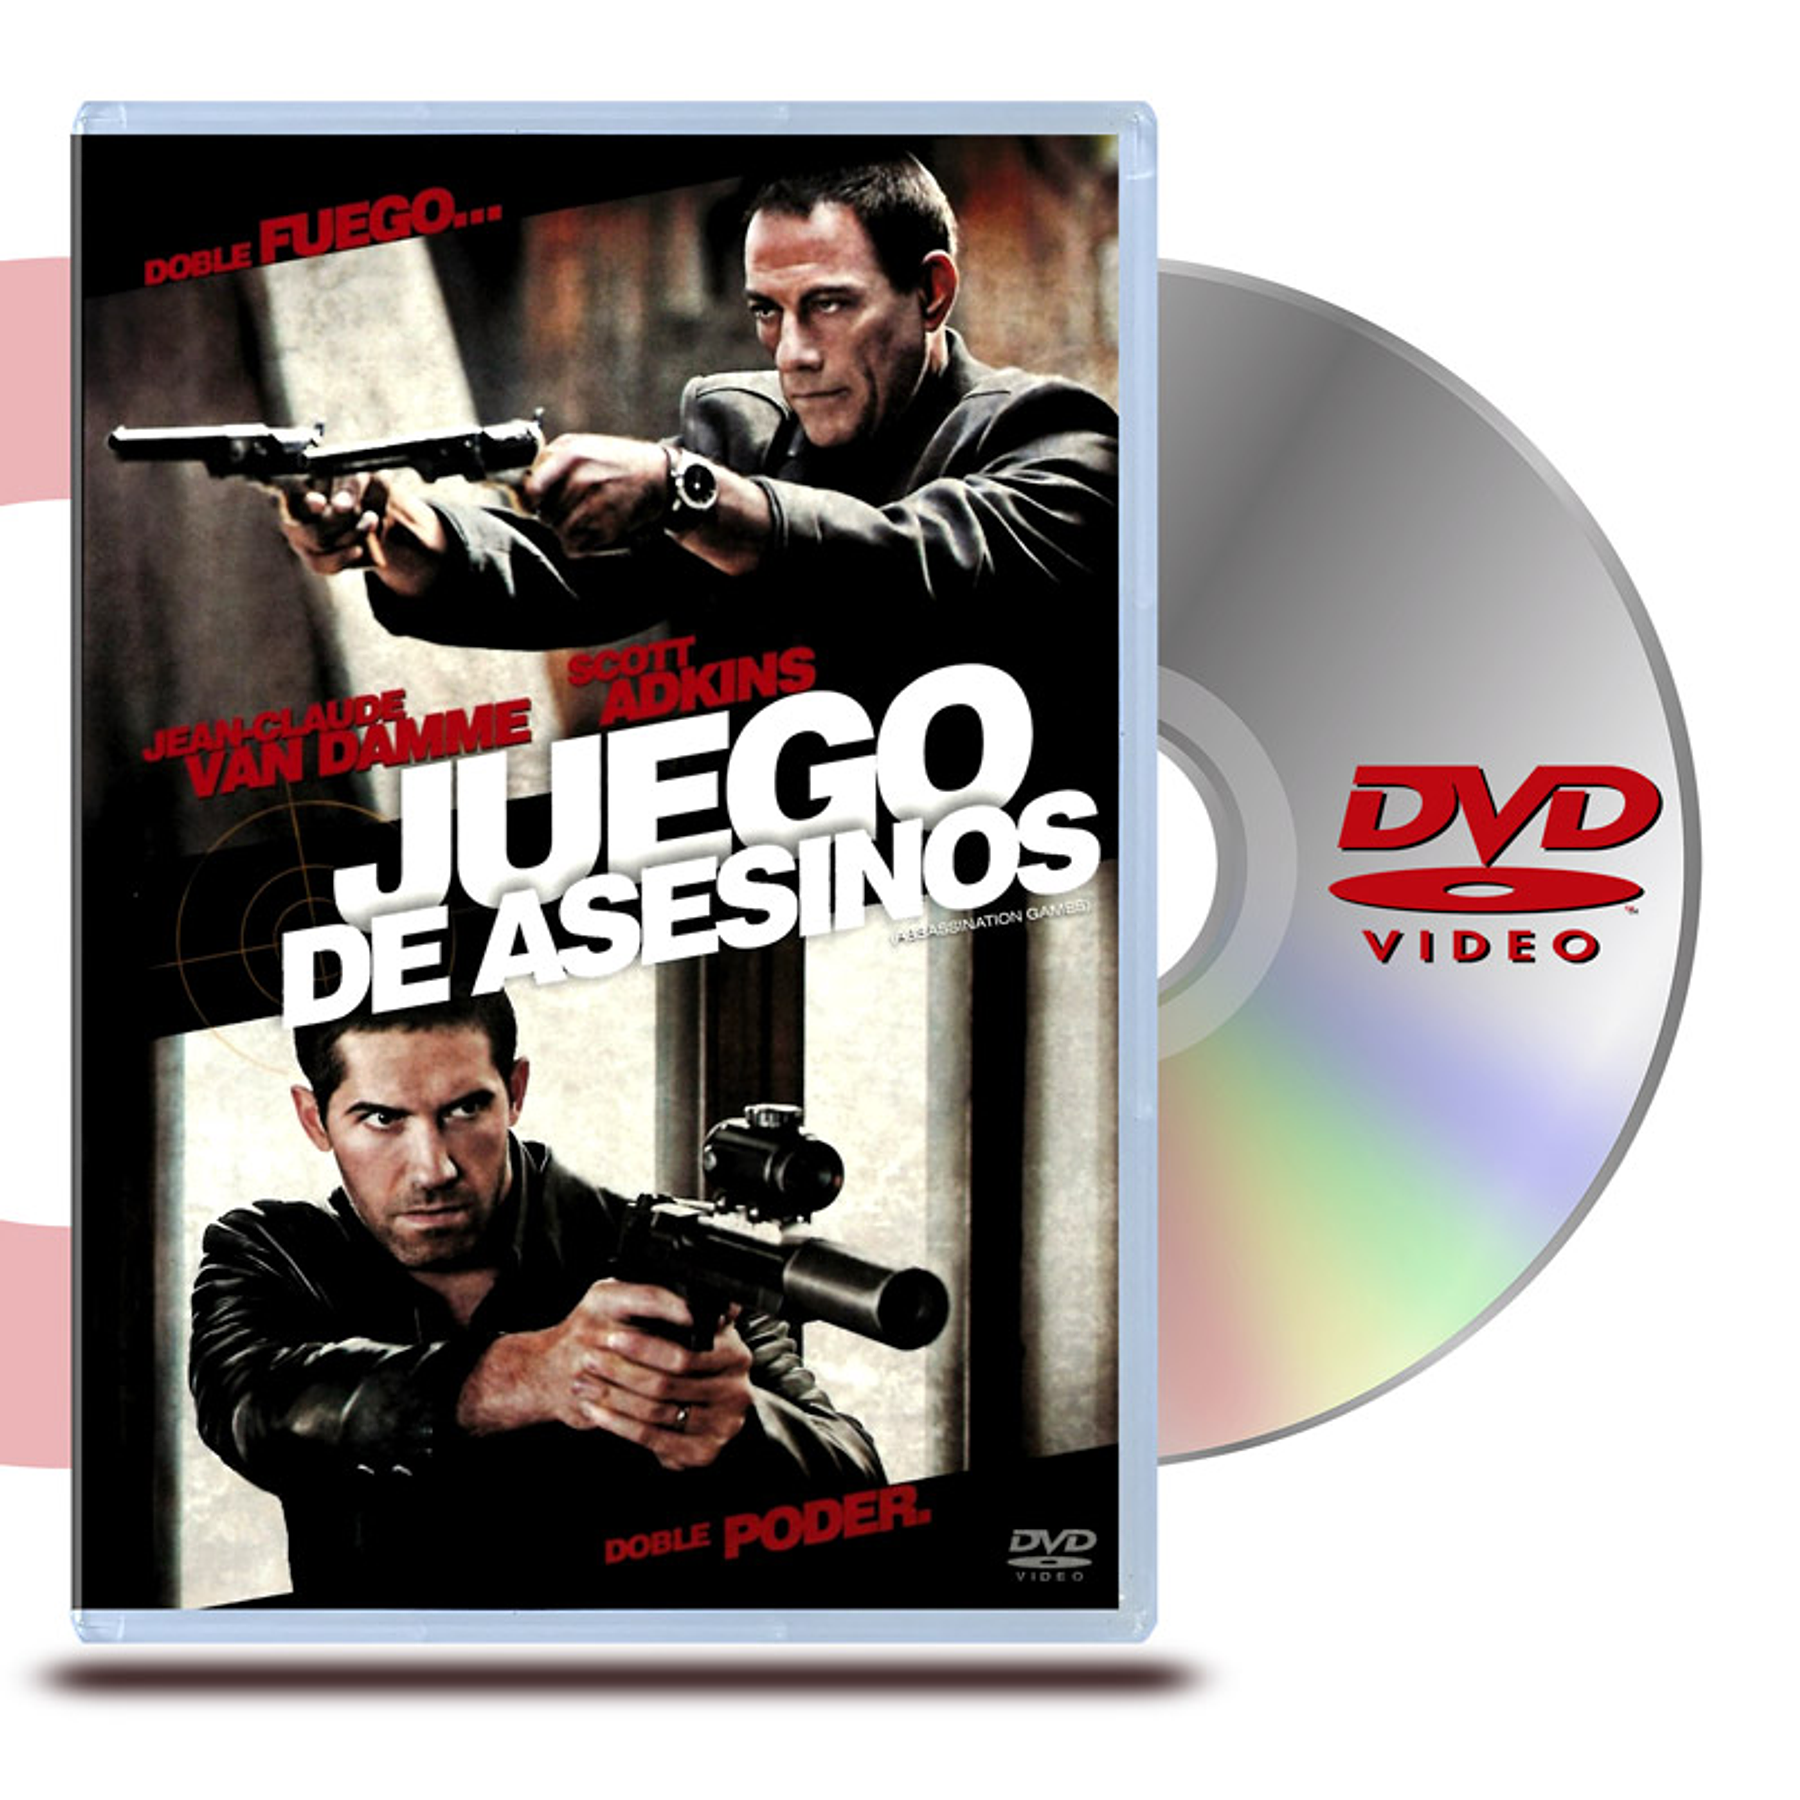 DVD JUEGO DE ASESINOS